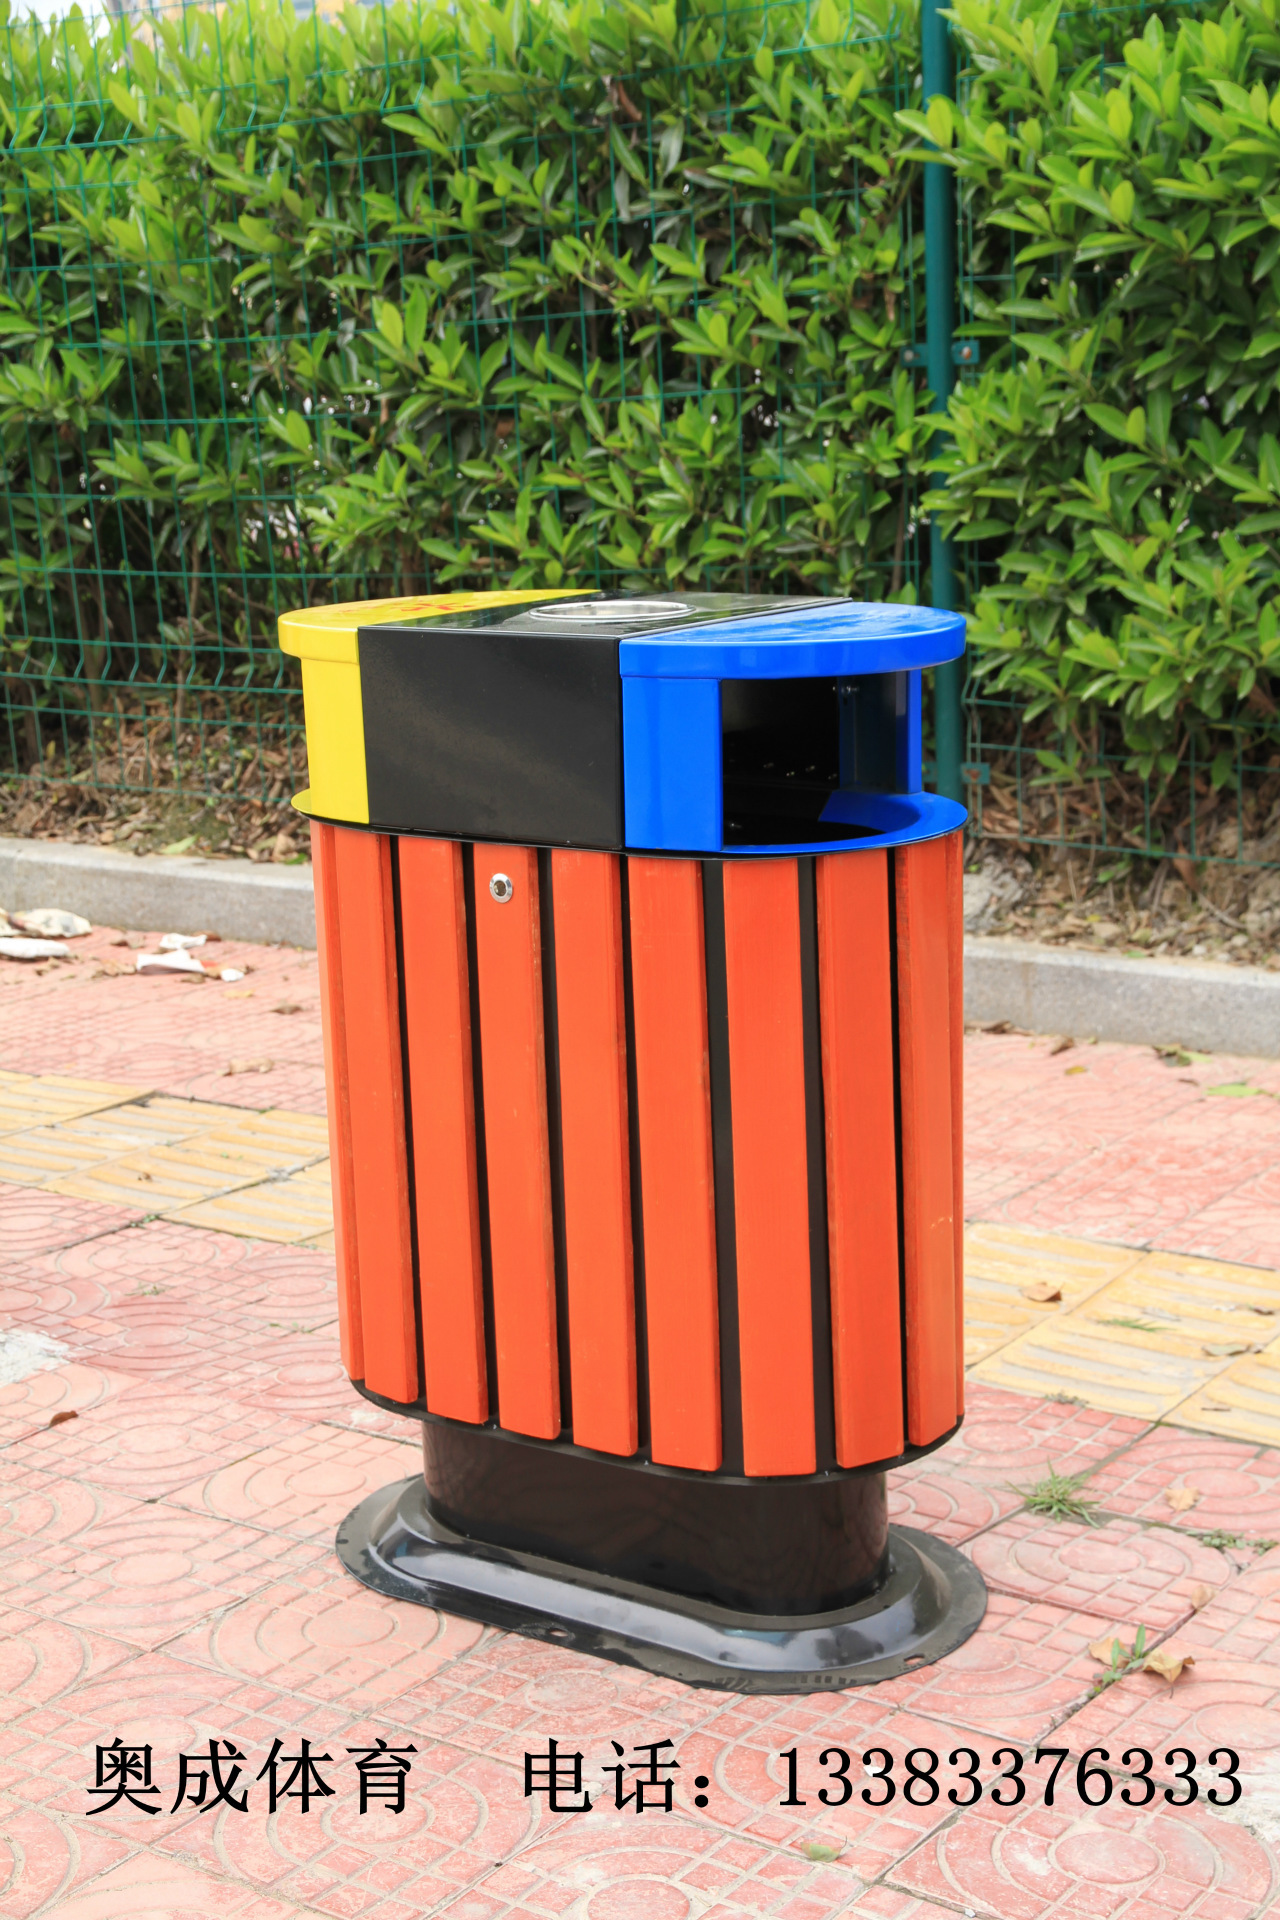 环卫垃圾桶/果皮箱/塑料垃圾桶价格/不锈钢垃圾桶厂家/分类拉圾桶示例图5